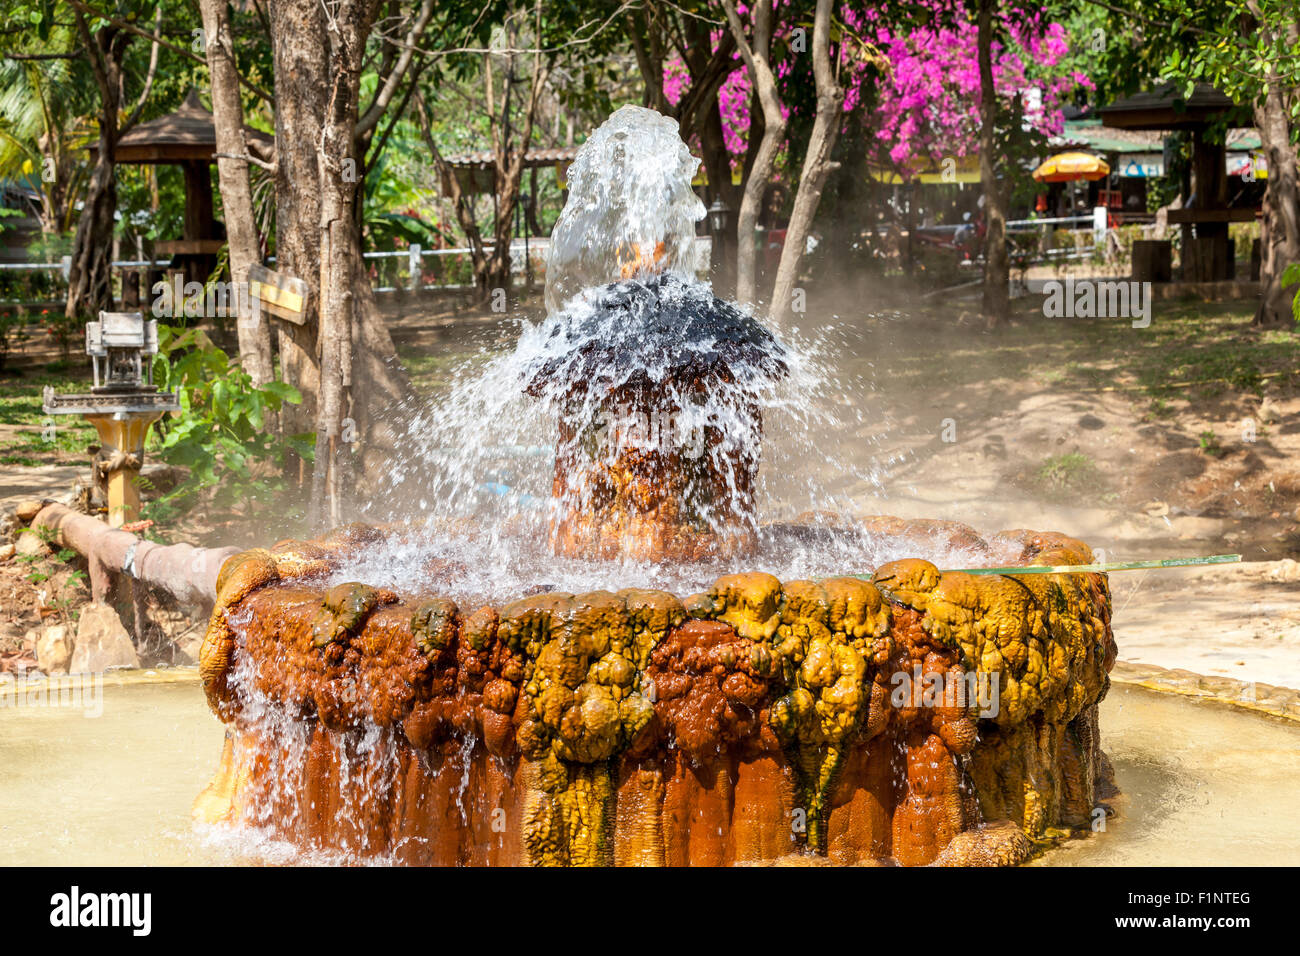 Esta fuente de agua caliente en el corazón de Tailandia tiene una temperatura de 90 grados Foto de stock